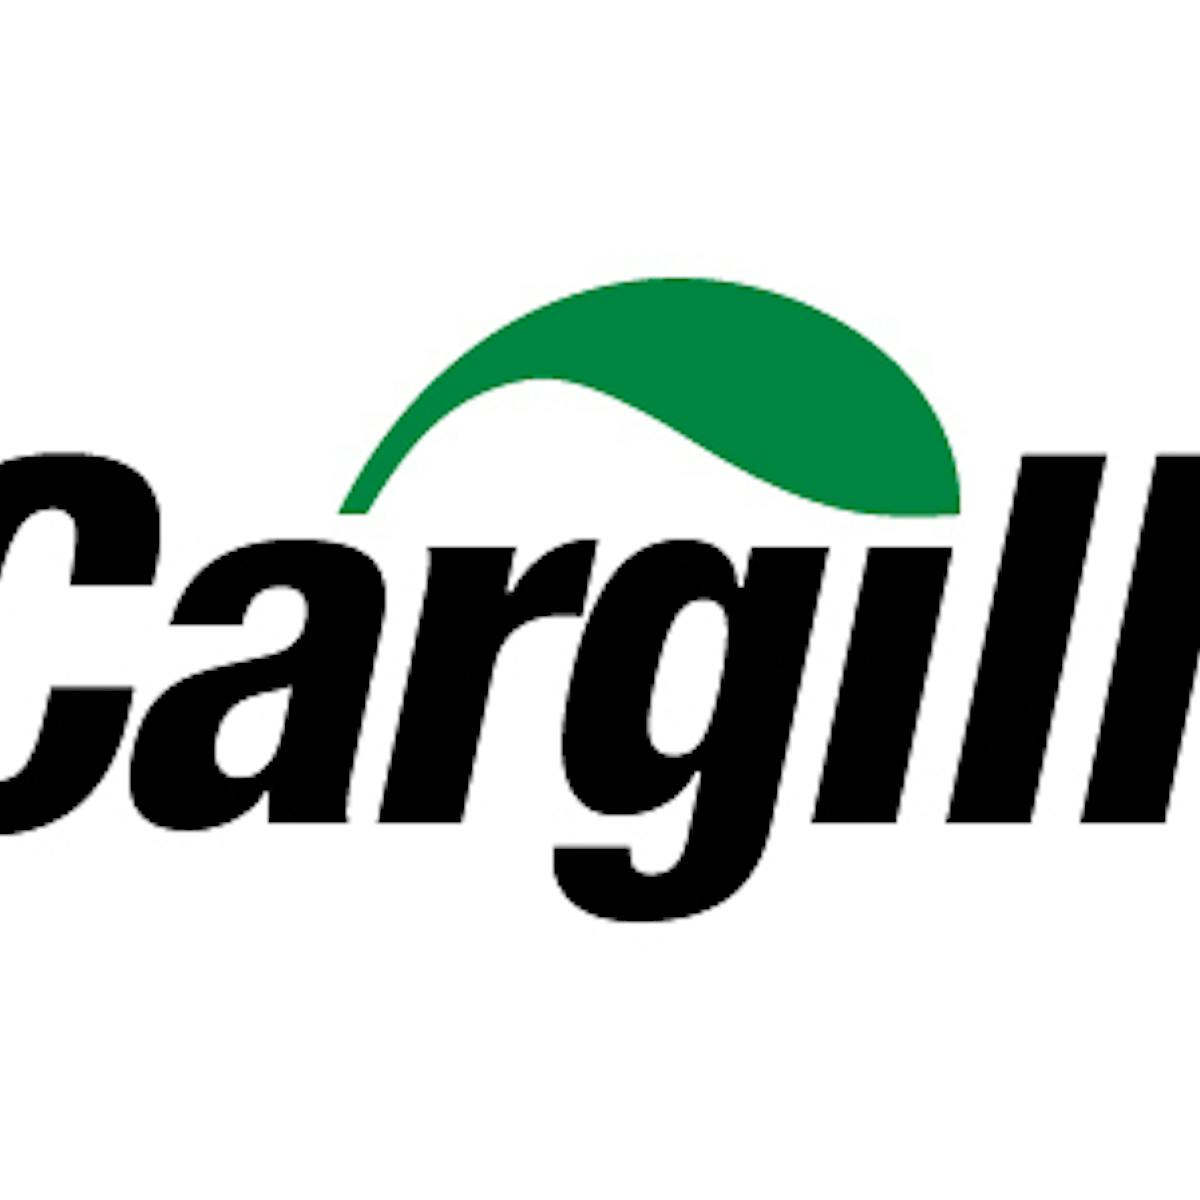 Cargill Black 2c Web Lg 5435666f13a8b